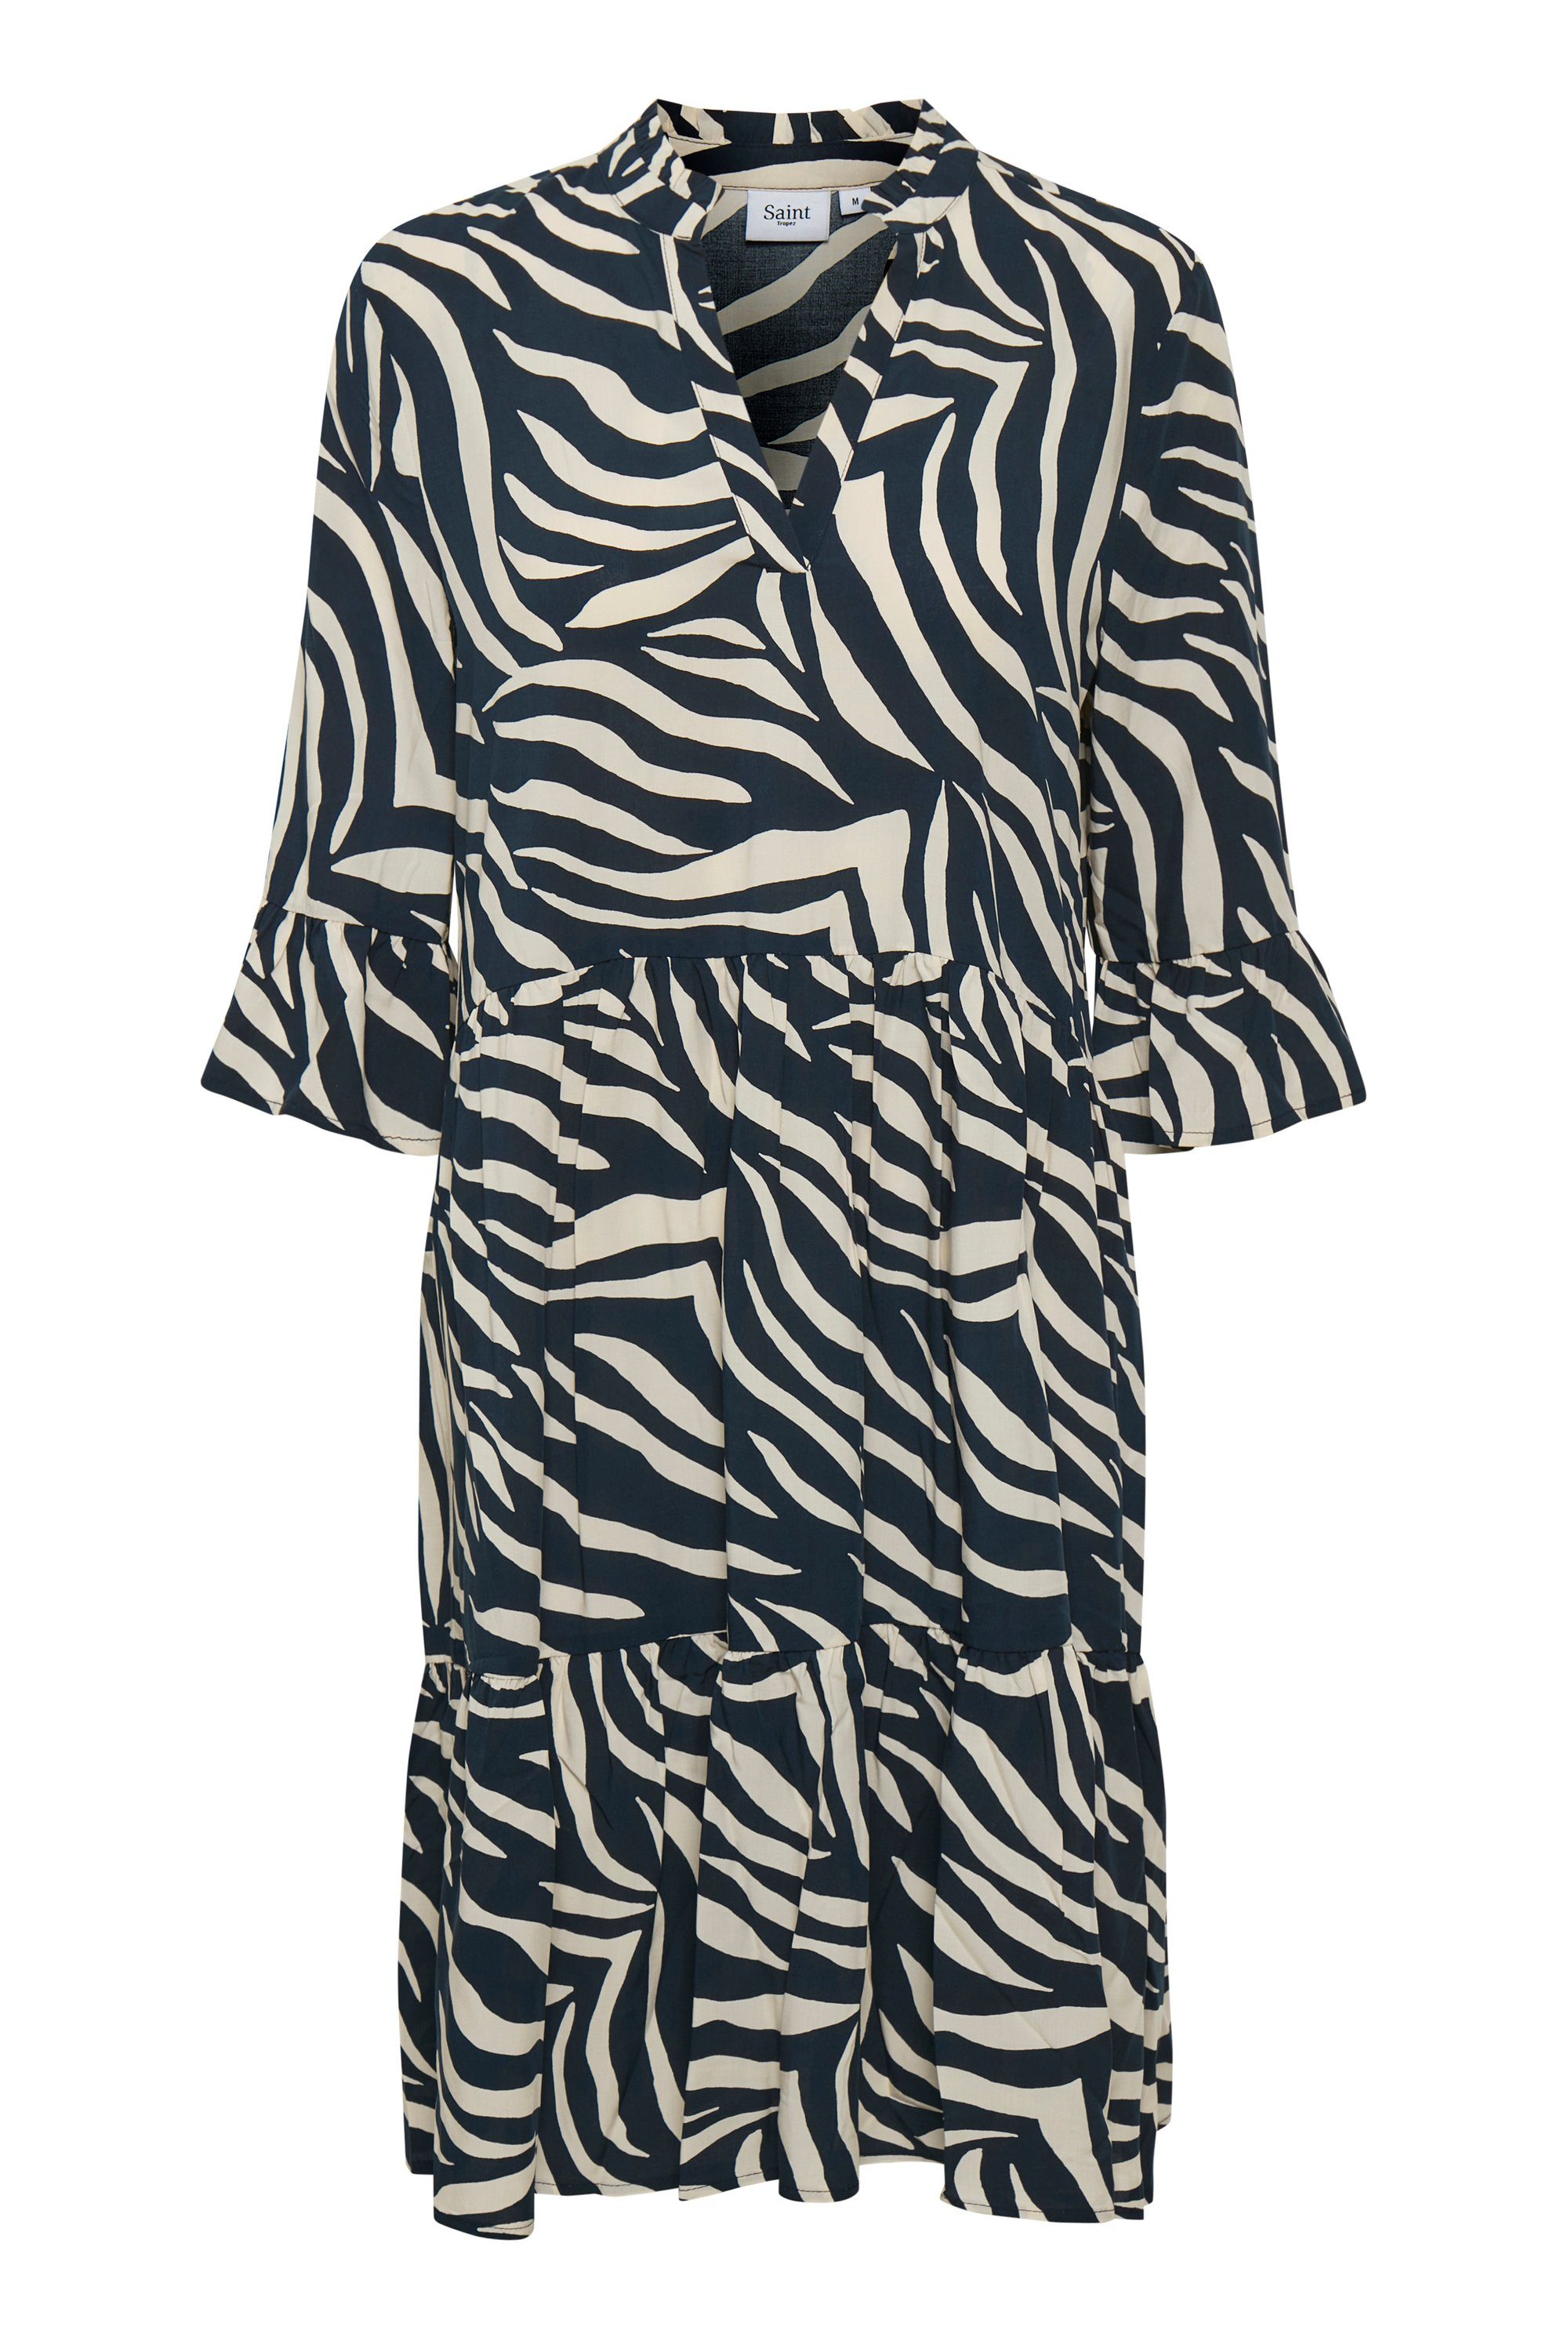 Saint Tropez Jerseykleid EdaSZ Dress Zebra Skin Total Eclipse